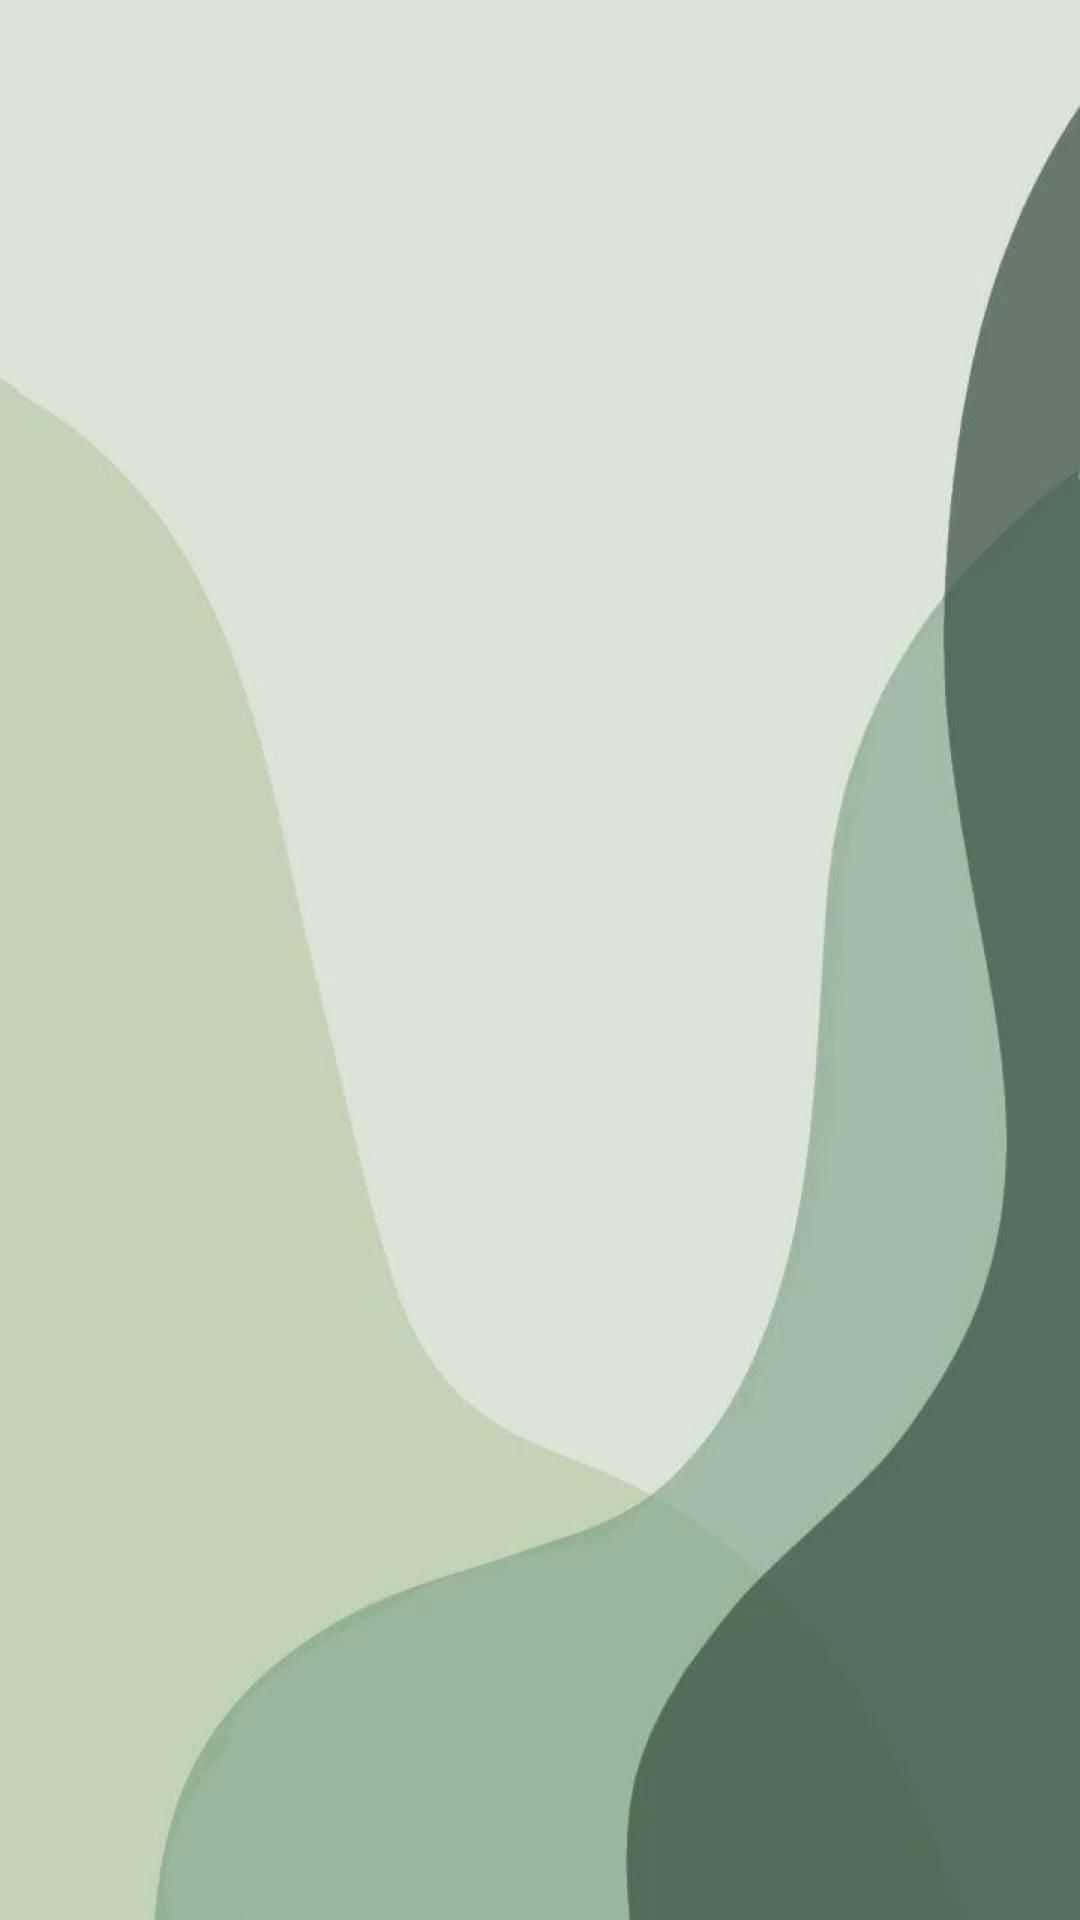 Niedlichesalbeigrüne Durchsichtige Kurvenförmige Formen Wallpaper